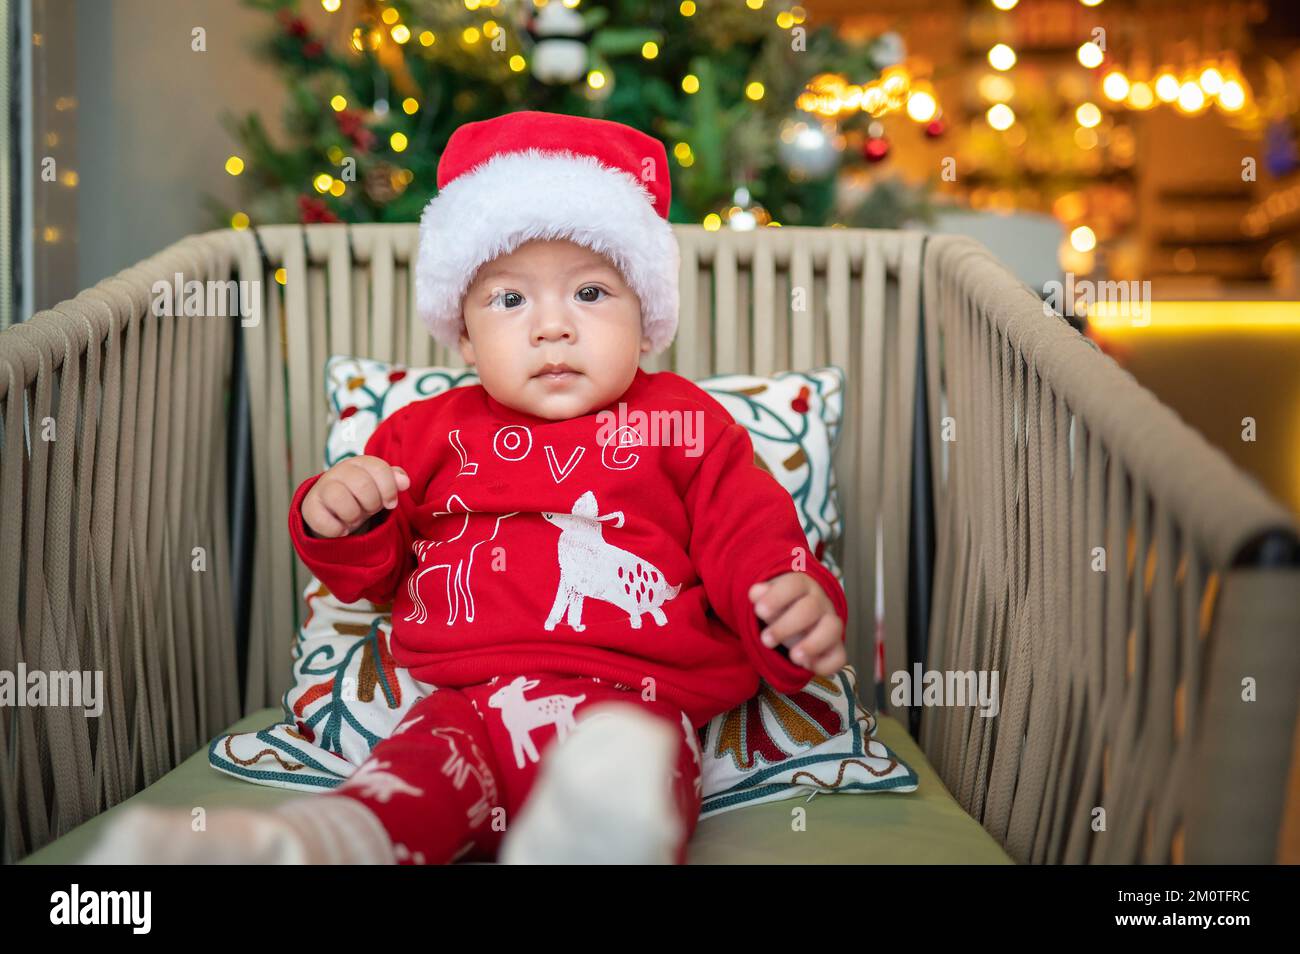 Lindo bebé recién nacido con sombrero de Santa Claus y conjunto festivo  junto a un árbol de Navidad con decoración festiva y luces de ferry para  Año Nuevo y Navidad Fotografía de